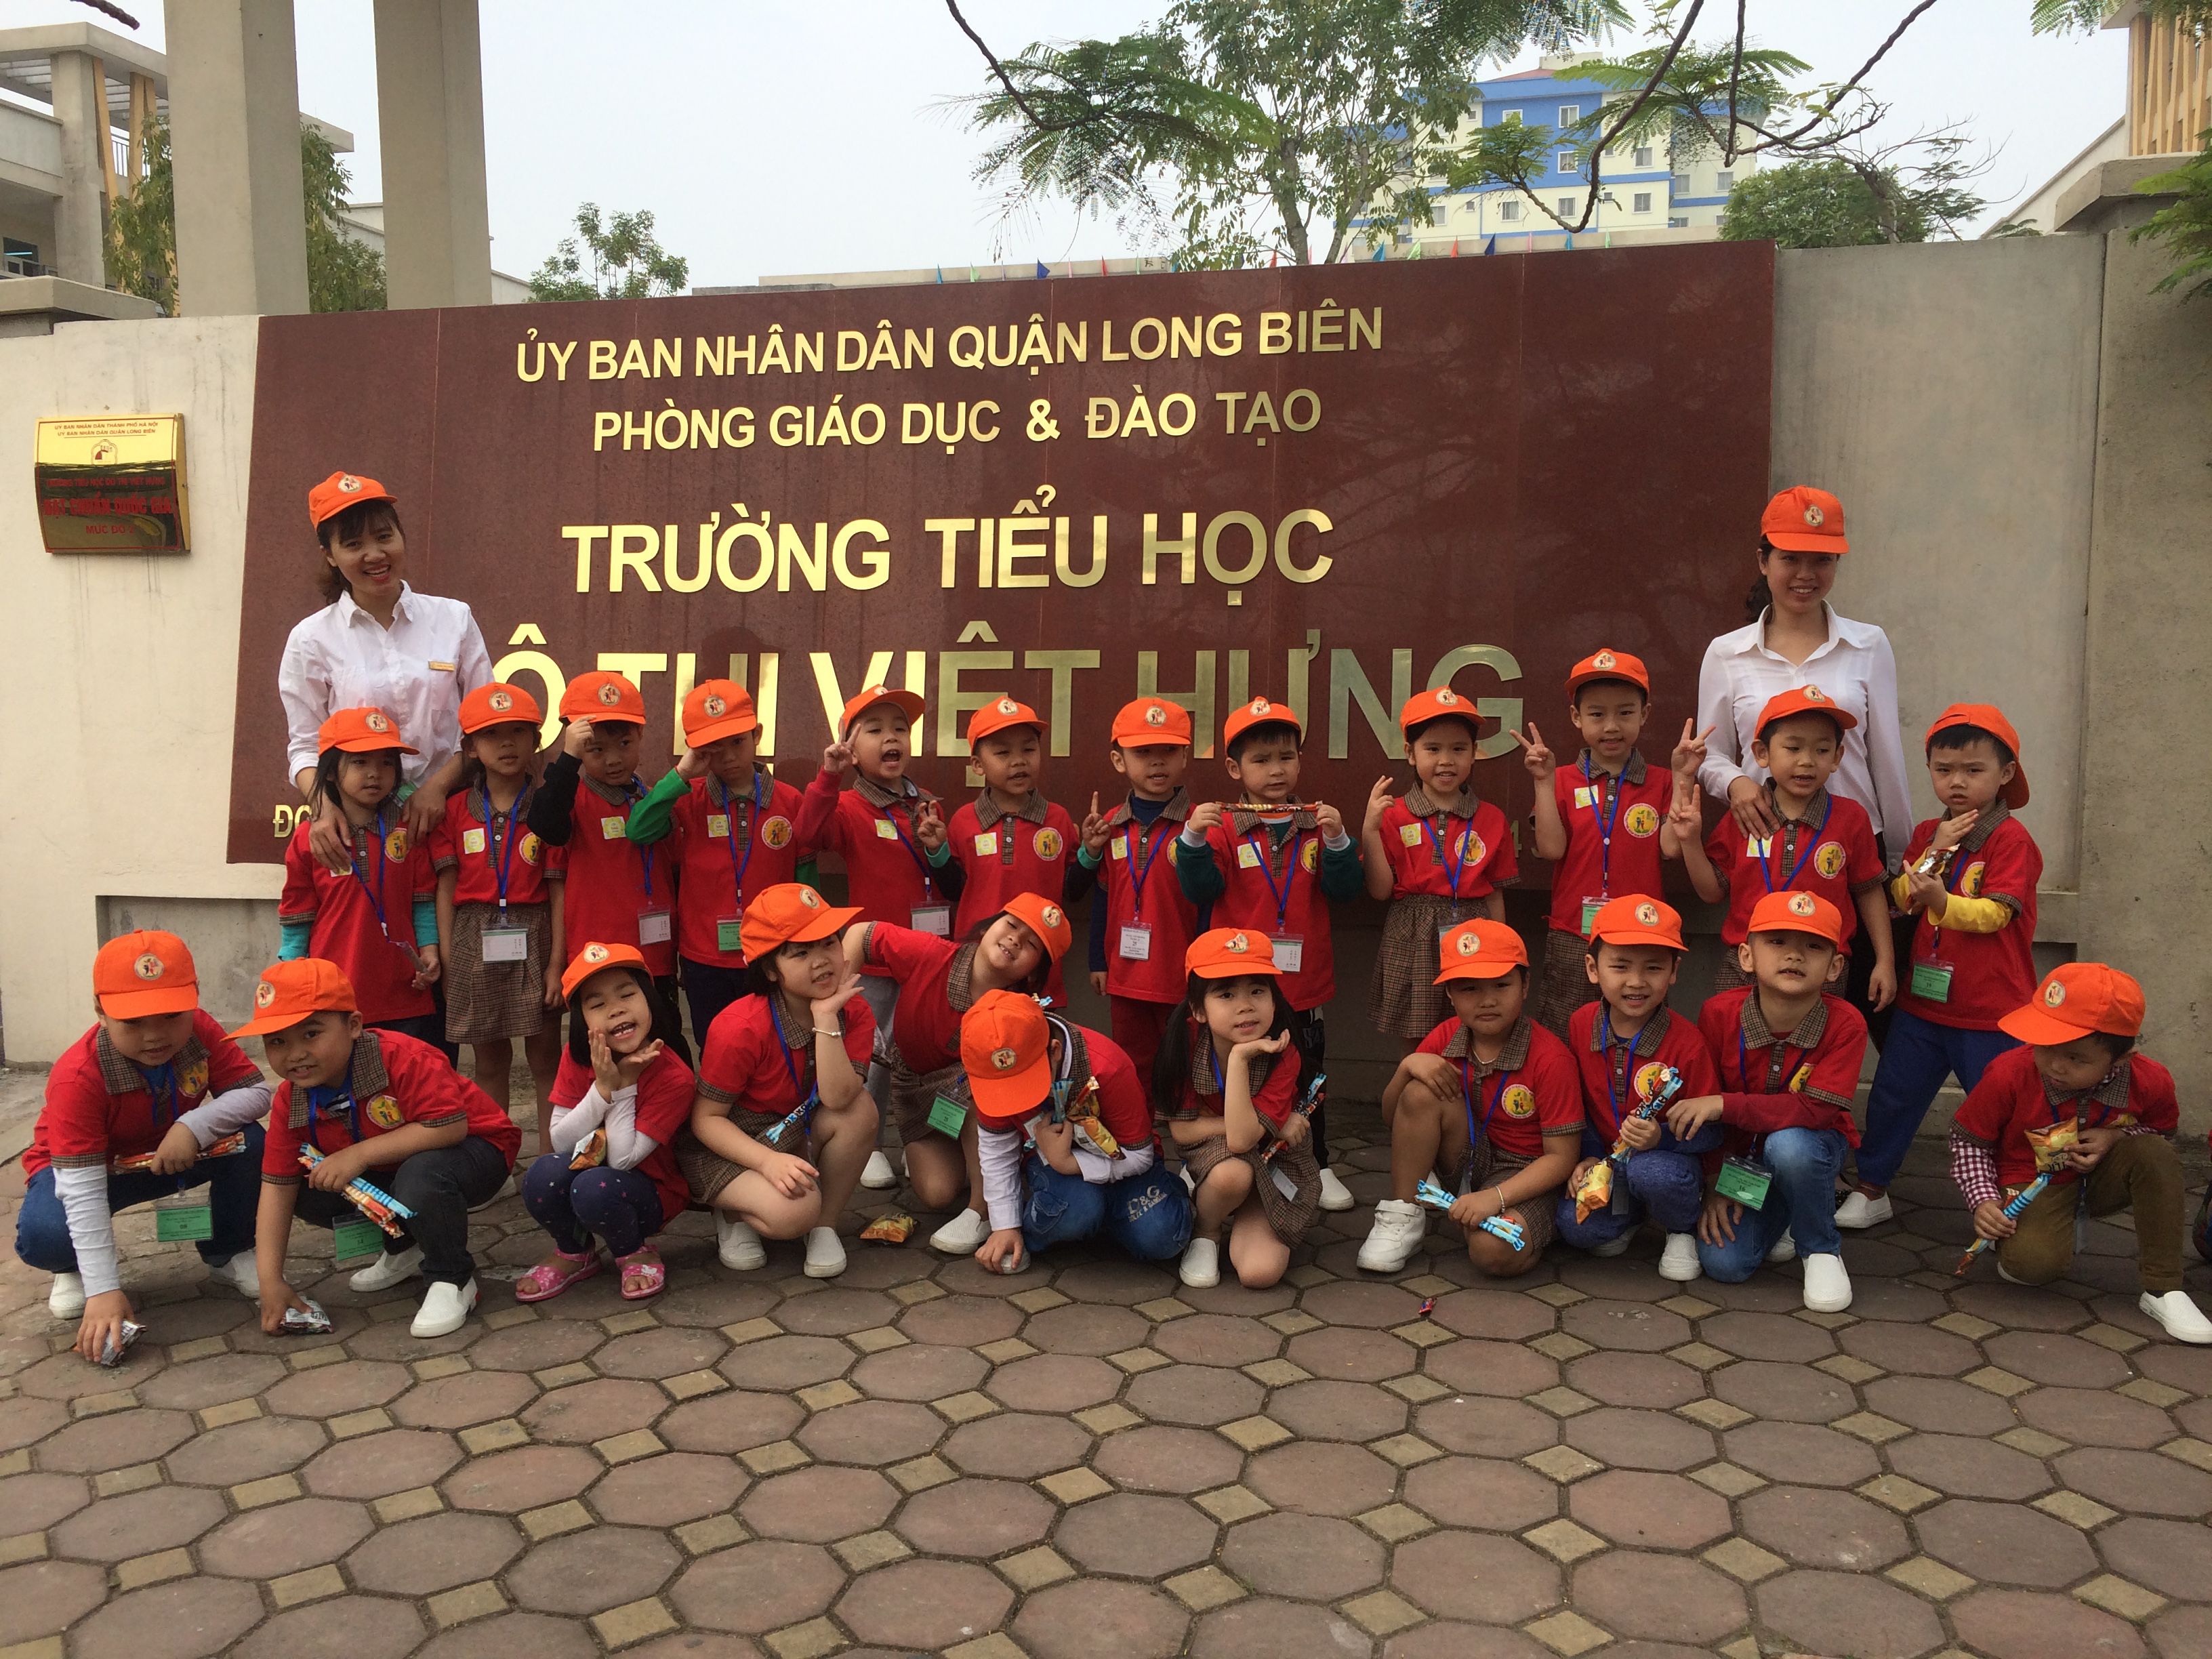 Khối mẫu giáo lớn giao lưu tại trường tiểu học Đô thị Việt hưng (16).jpg